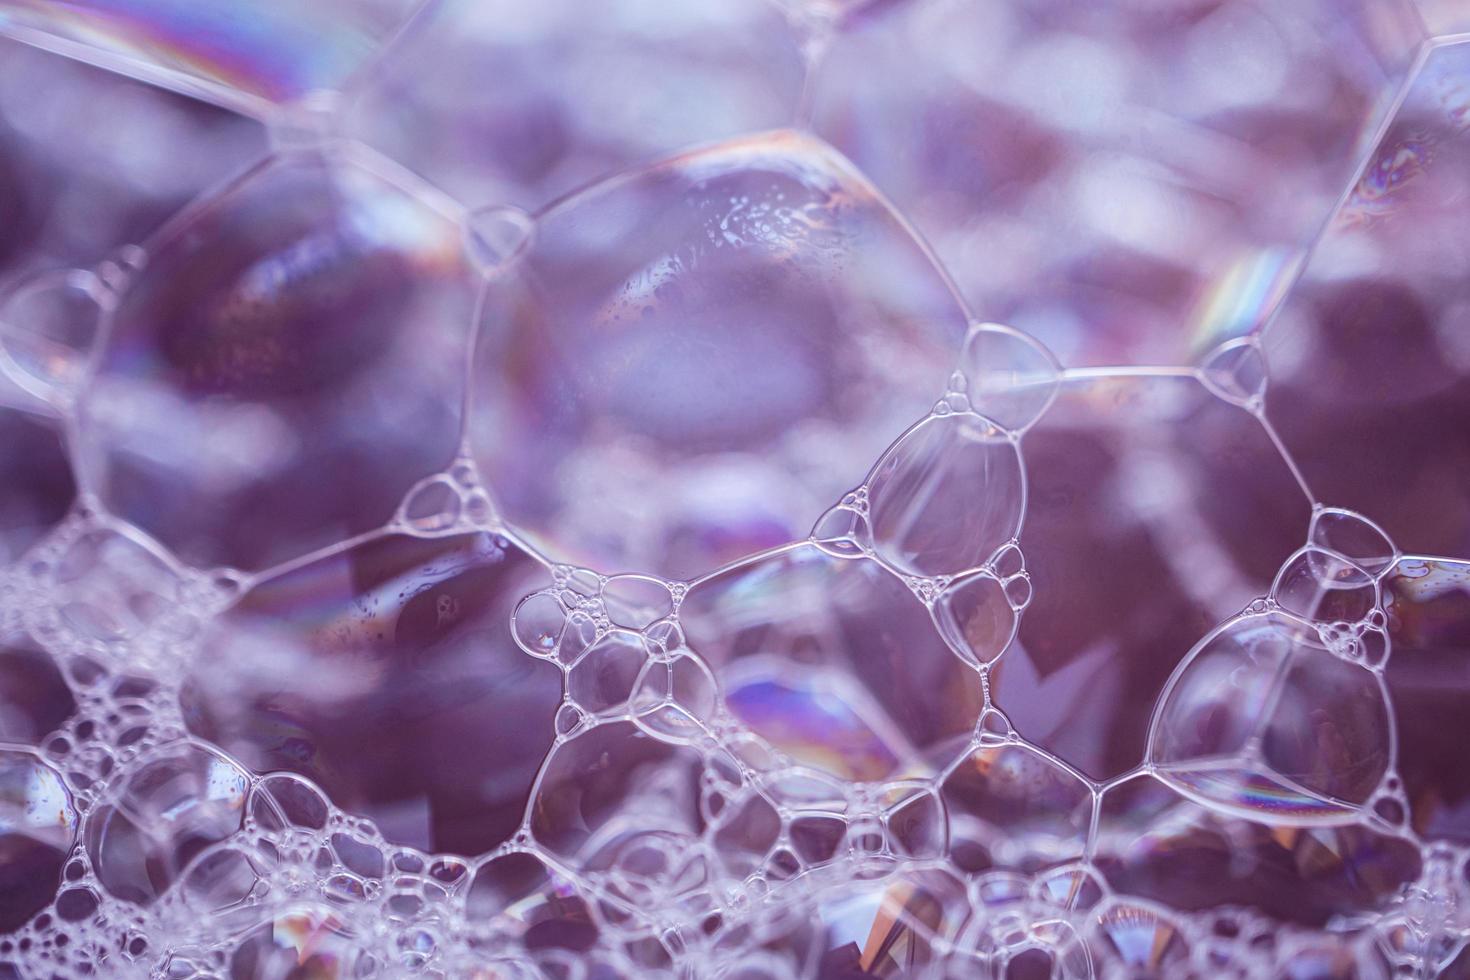 bulles de savon colorées, arrière-plan abstrait photo